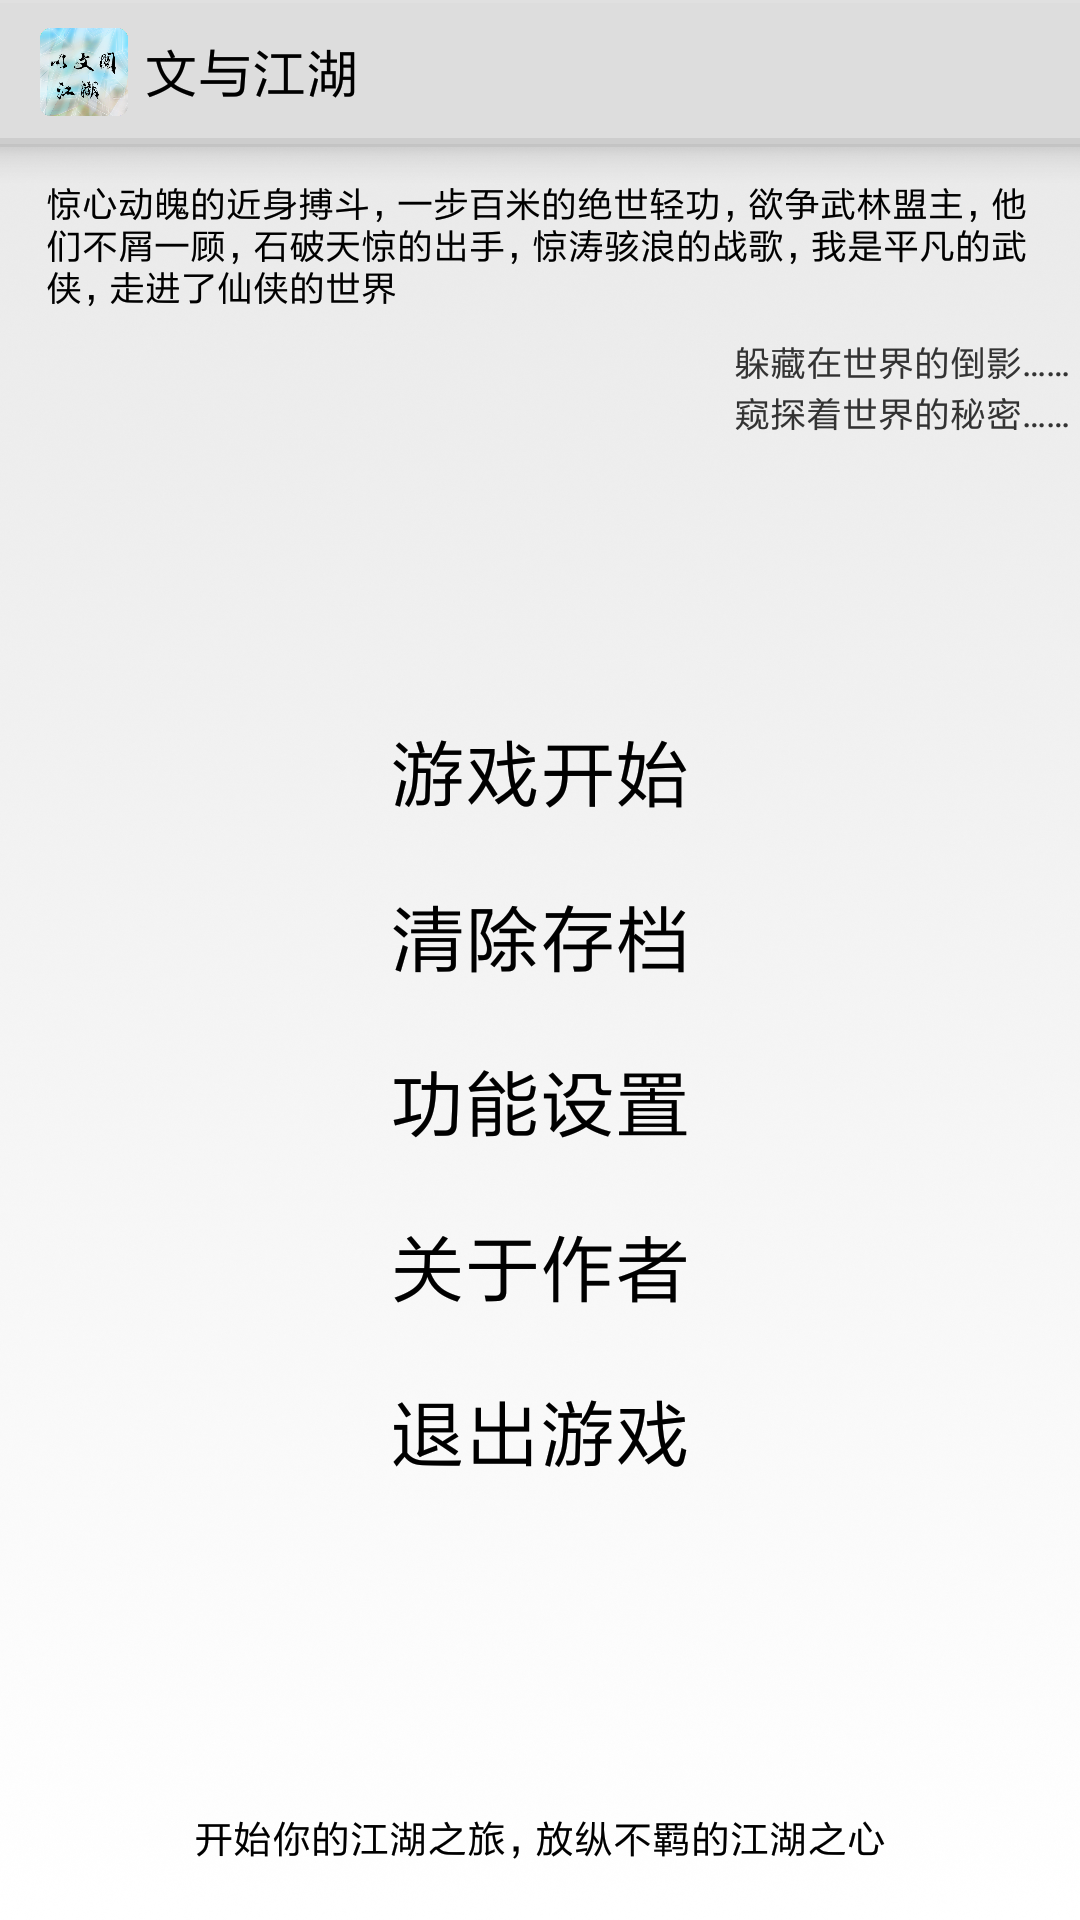 Screenshot 1 of Wen et Jianghu 6.7